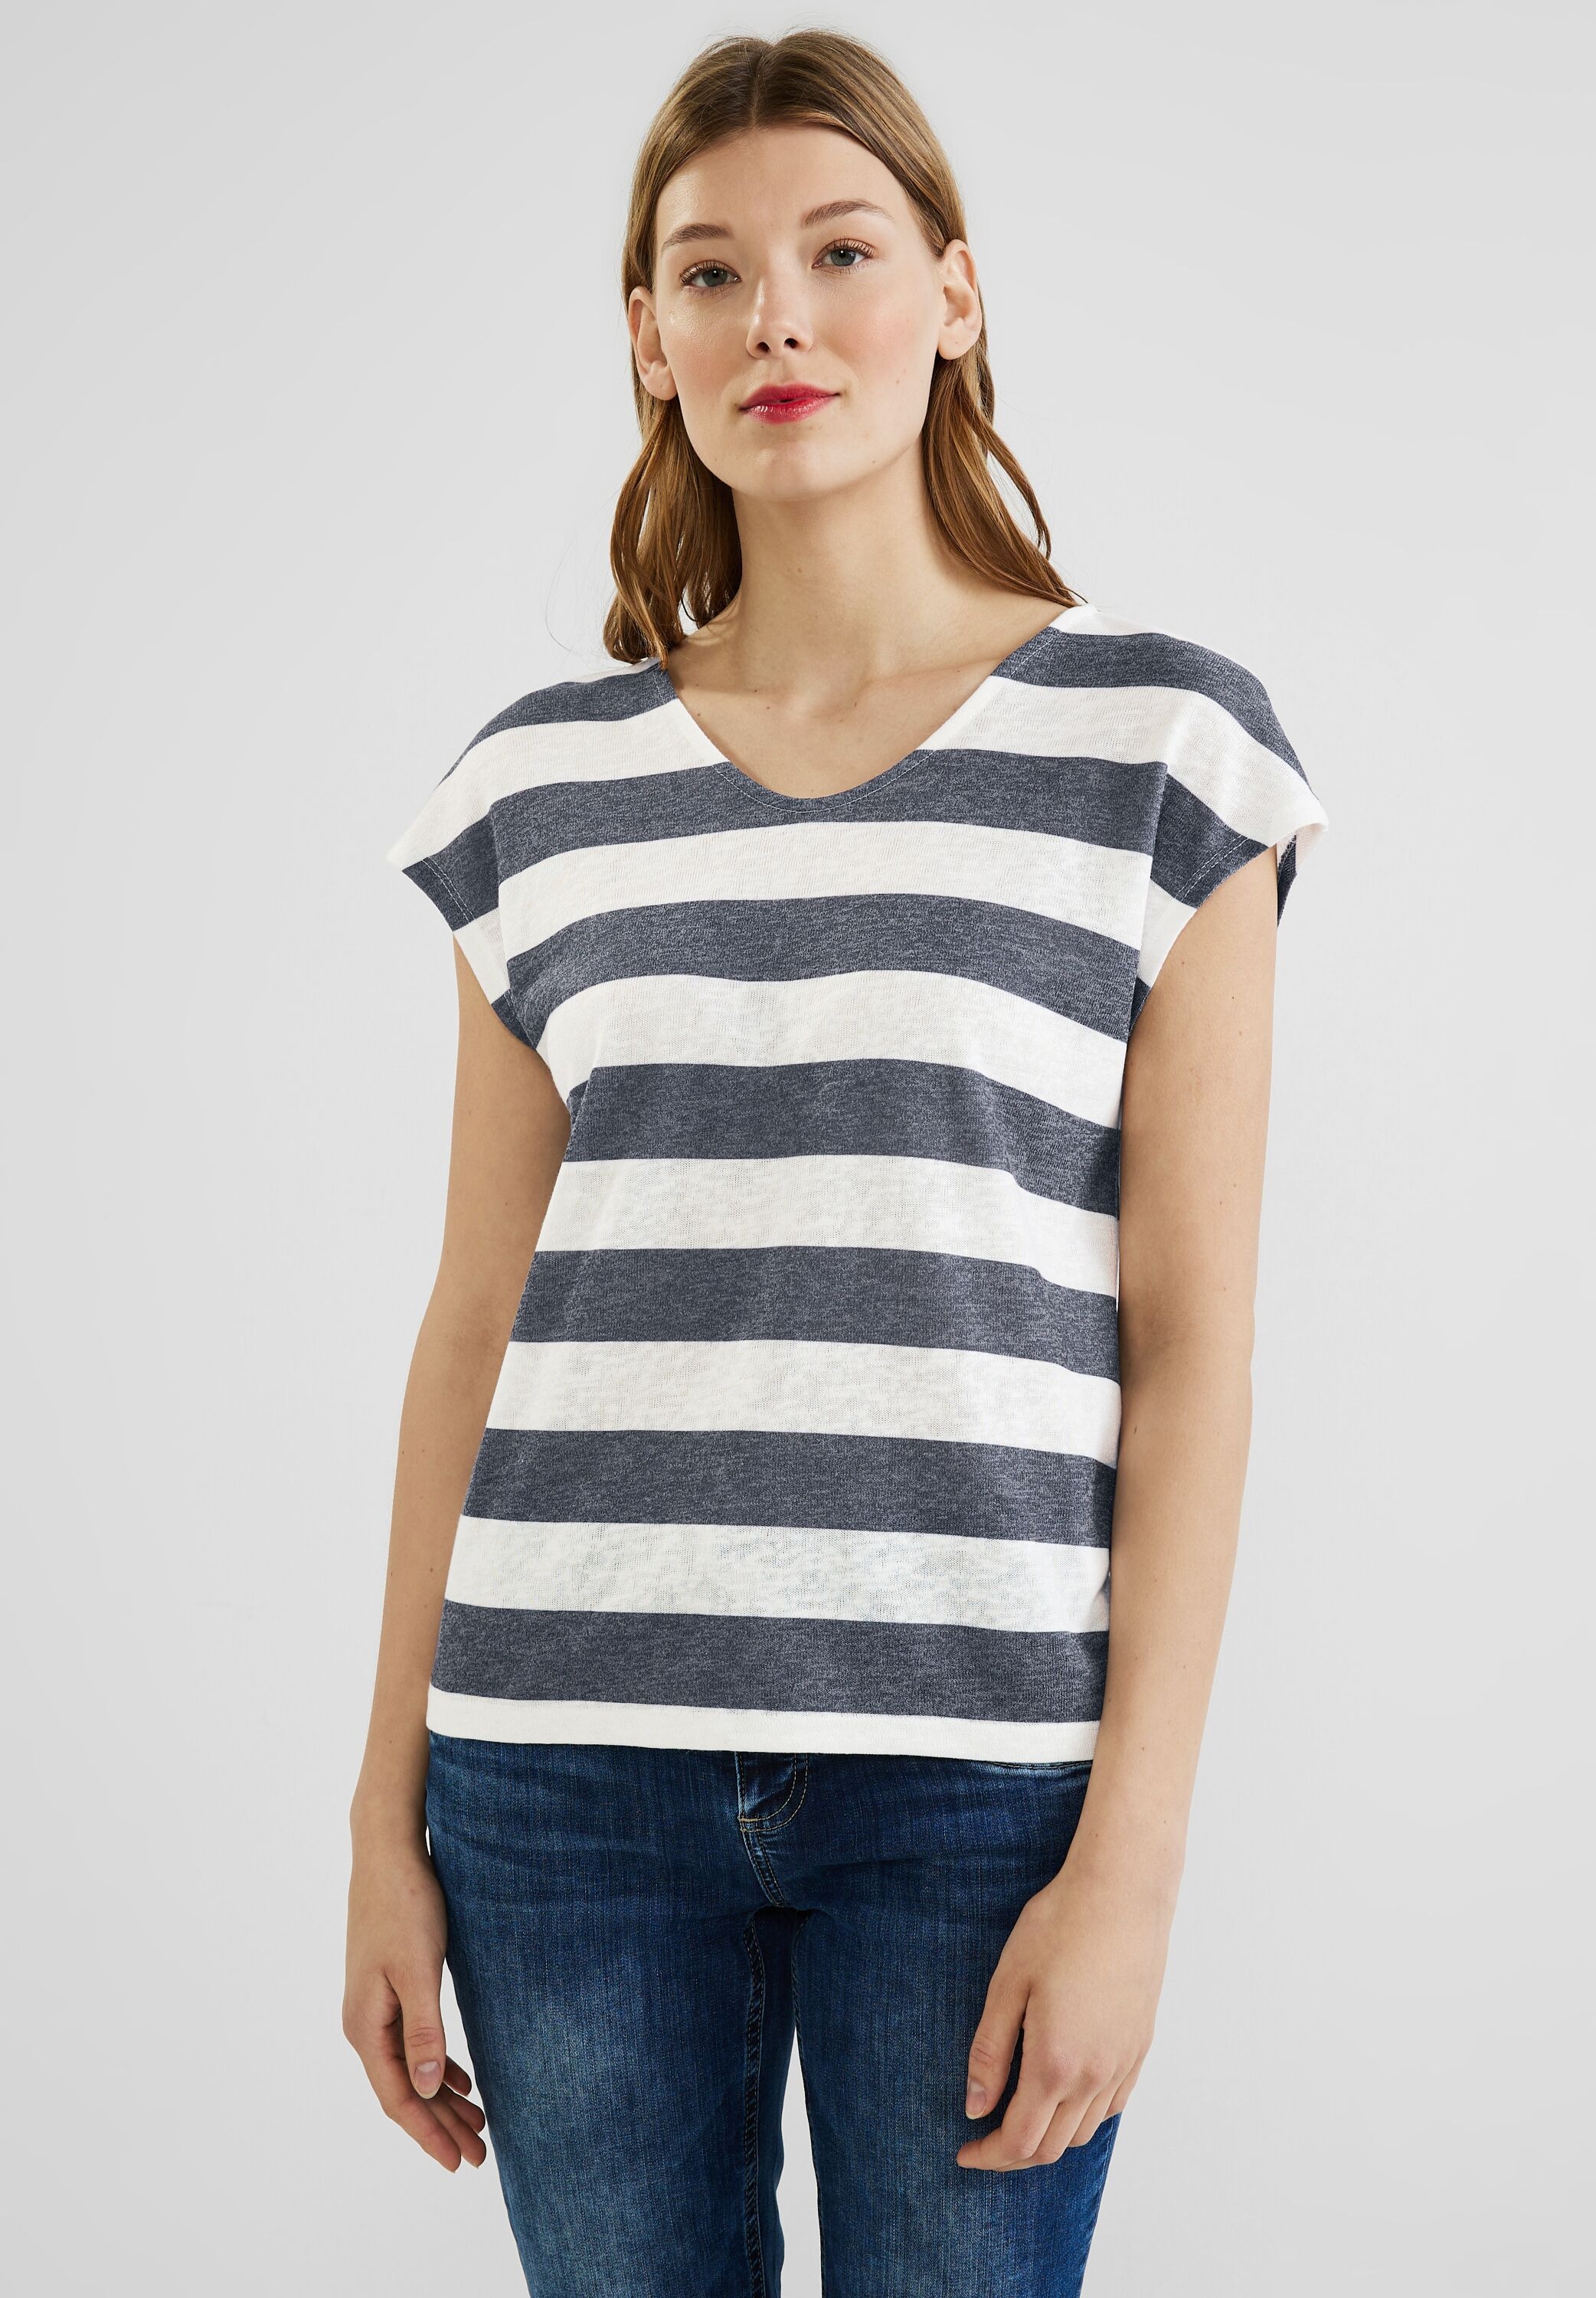 BAUR mit überschnittenen | T-Shirt, STREET kaufen ONE online Schultern